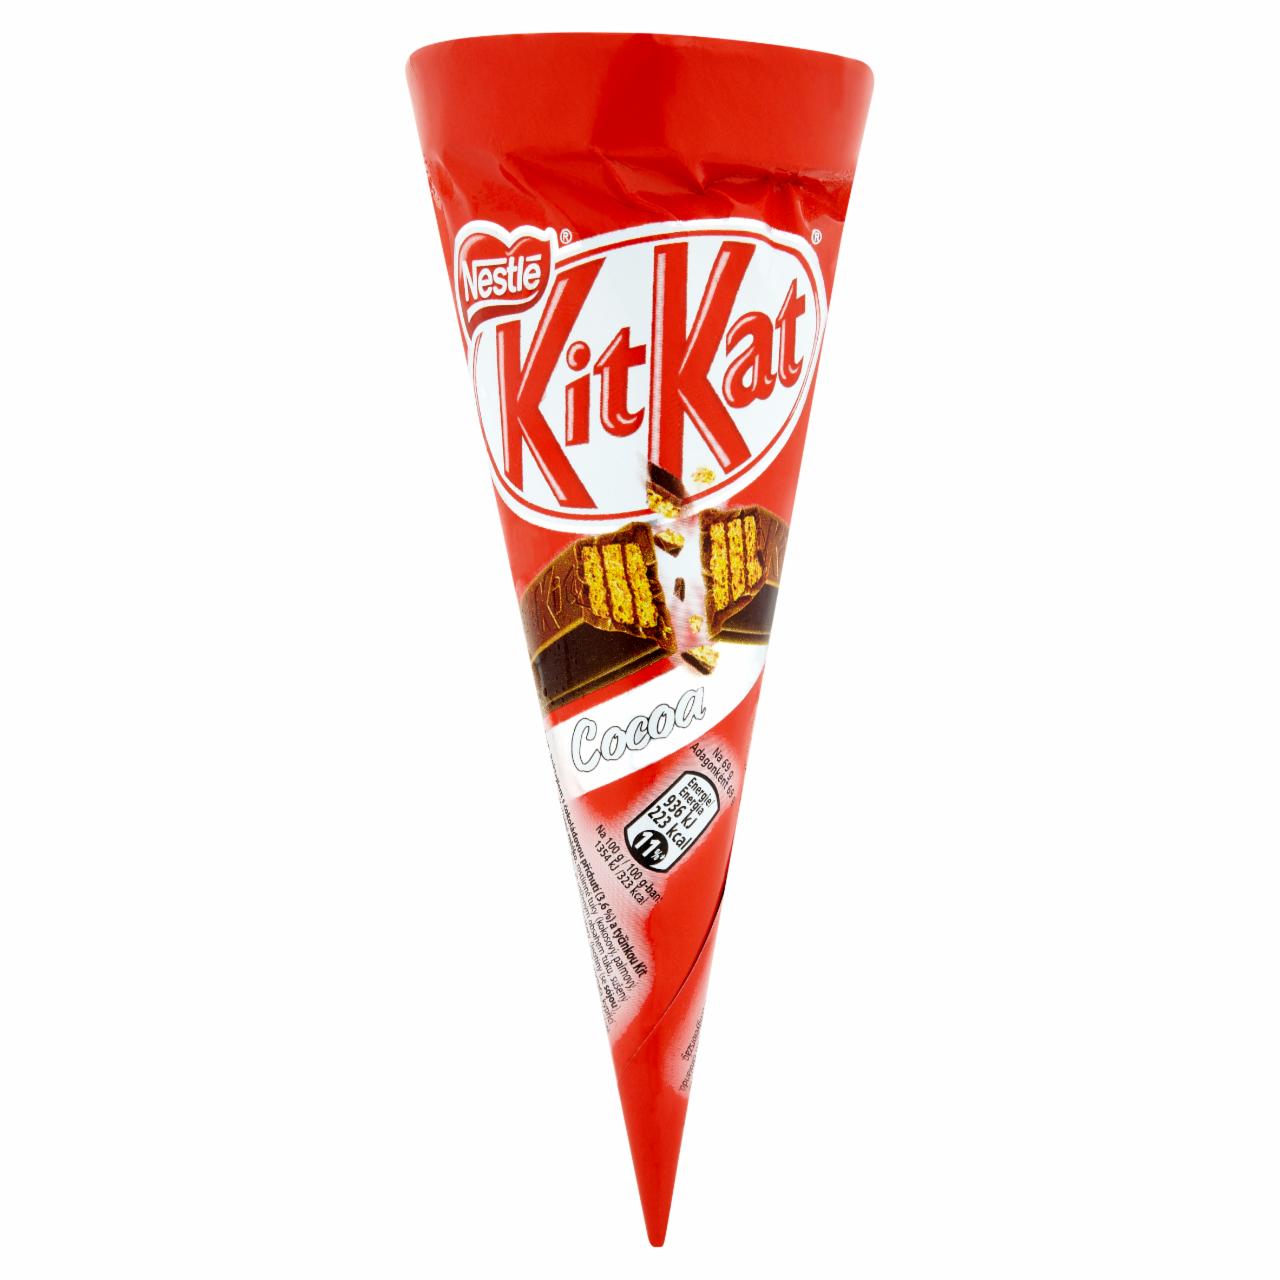 Képek - Nestlé Kit Kat csokoládés jégkrém 110 ml